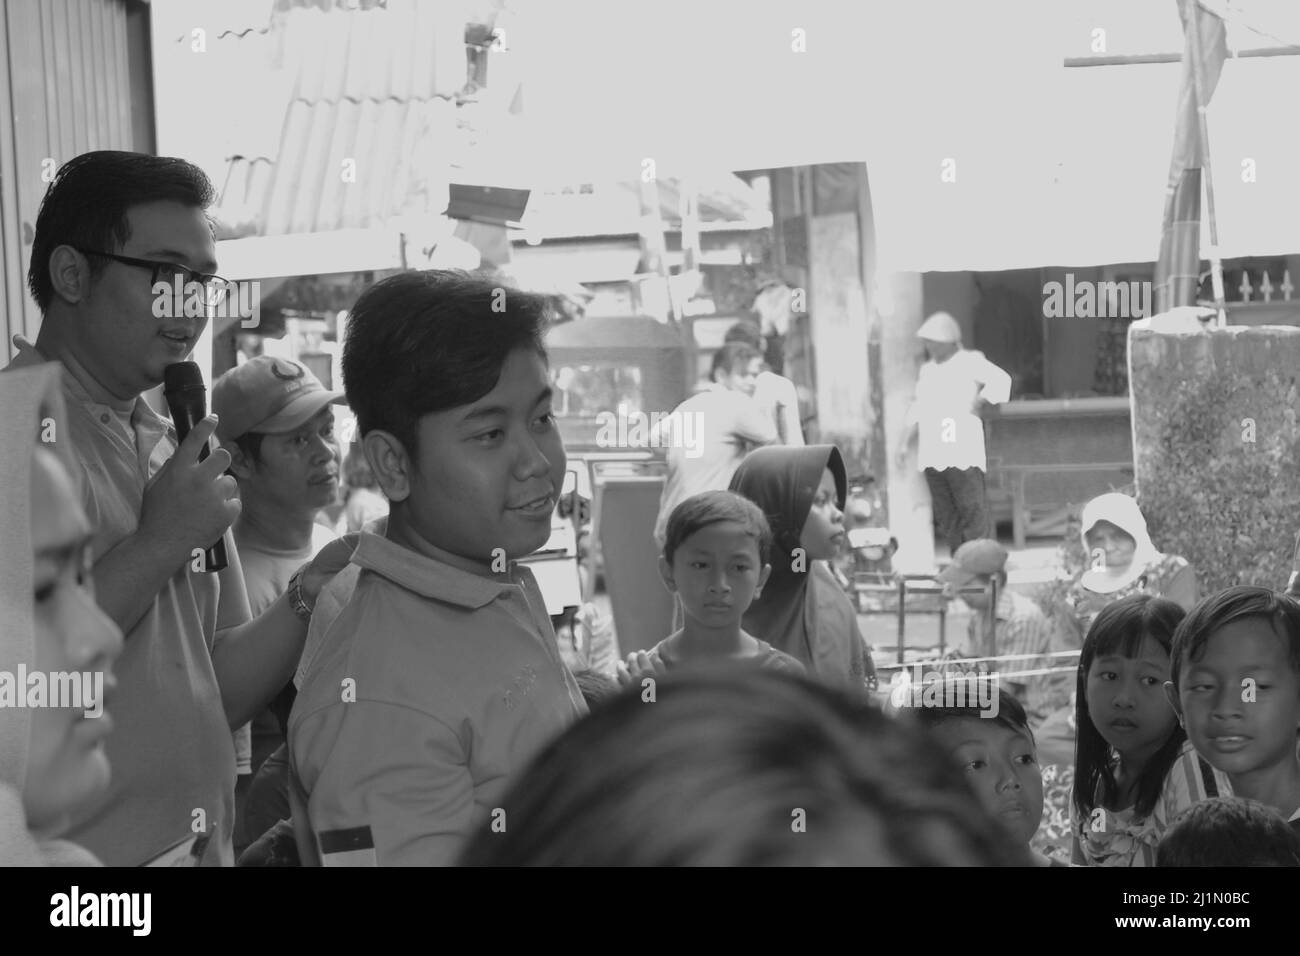 Jakarta, Indonesia - 08 17 2018: Foto in bianco e nero che mostra un uomo che guarda qualcosa in un'altra direzione durante la celebrazione del 7 dell'Indonesia Foto Stock